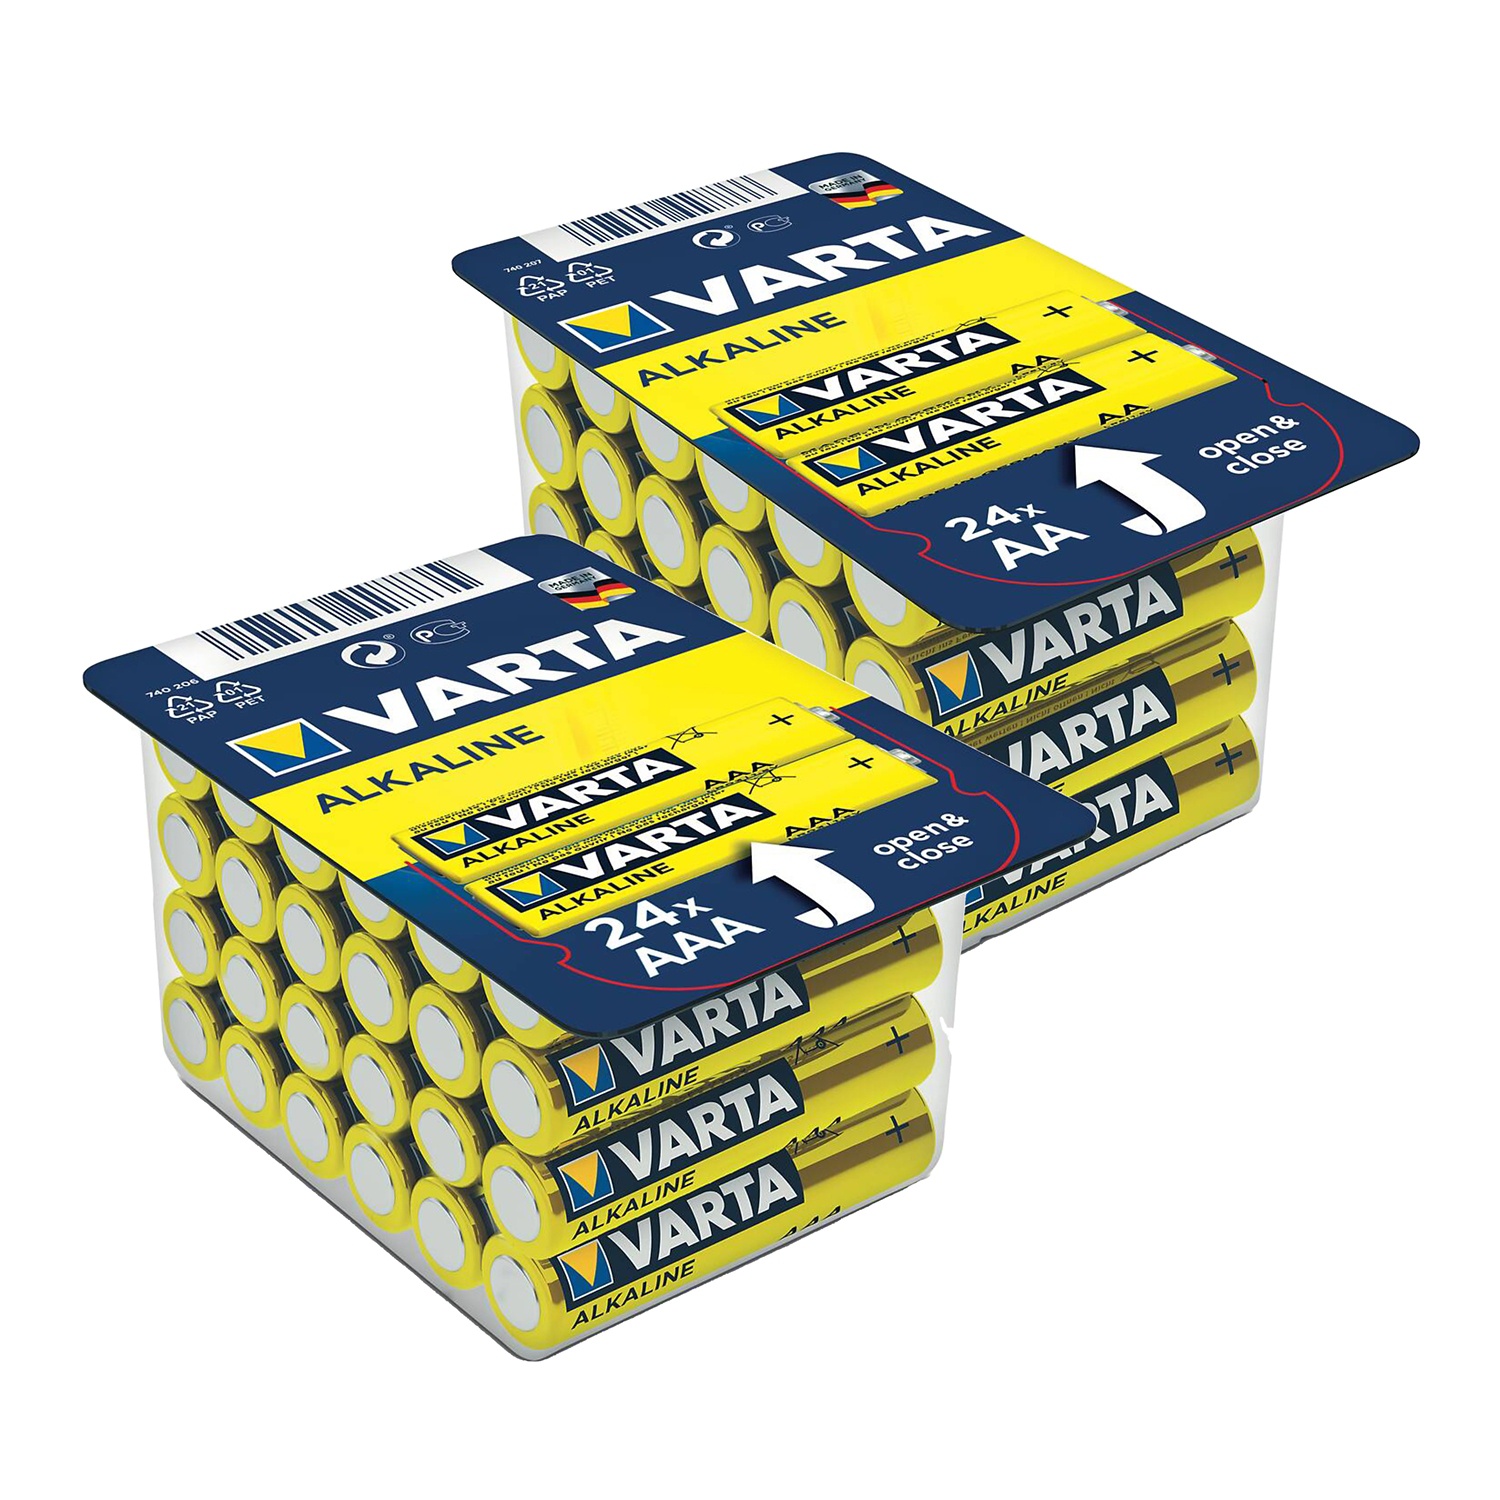 VARTA Batterie confezione maxi, 24 pezzi